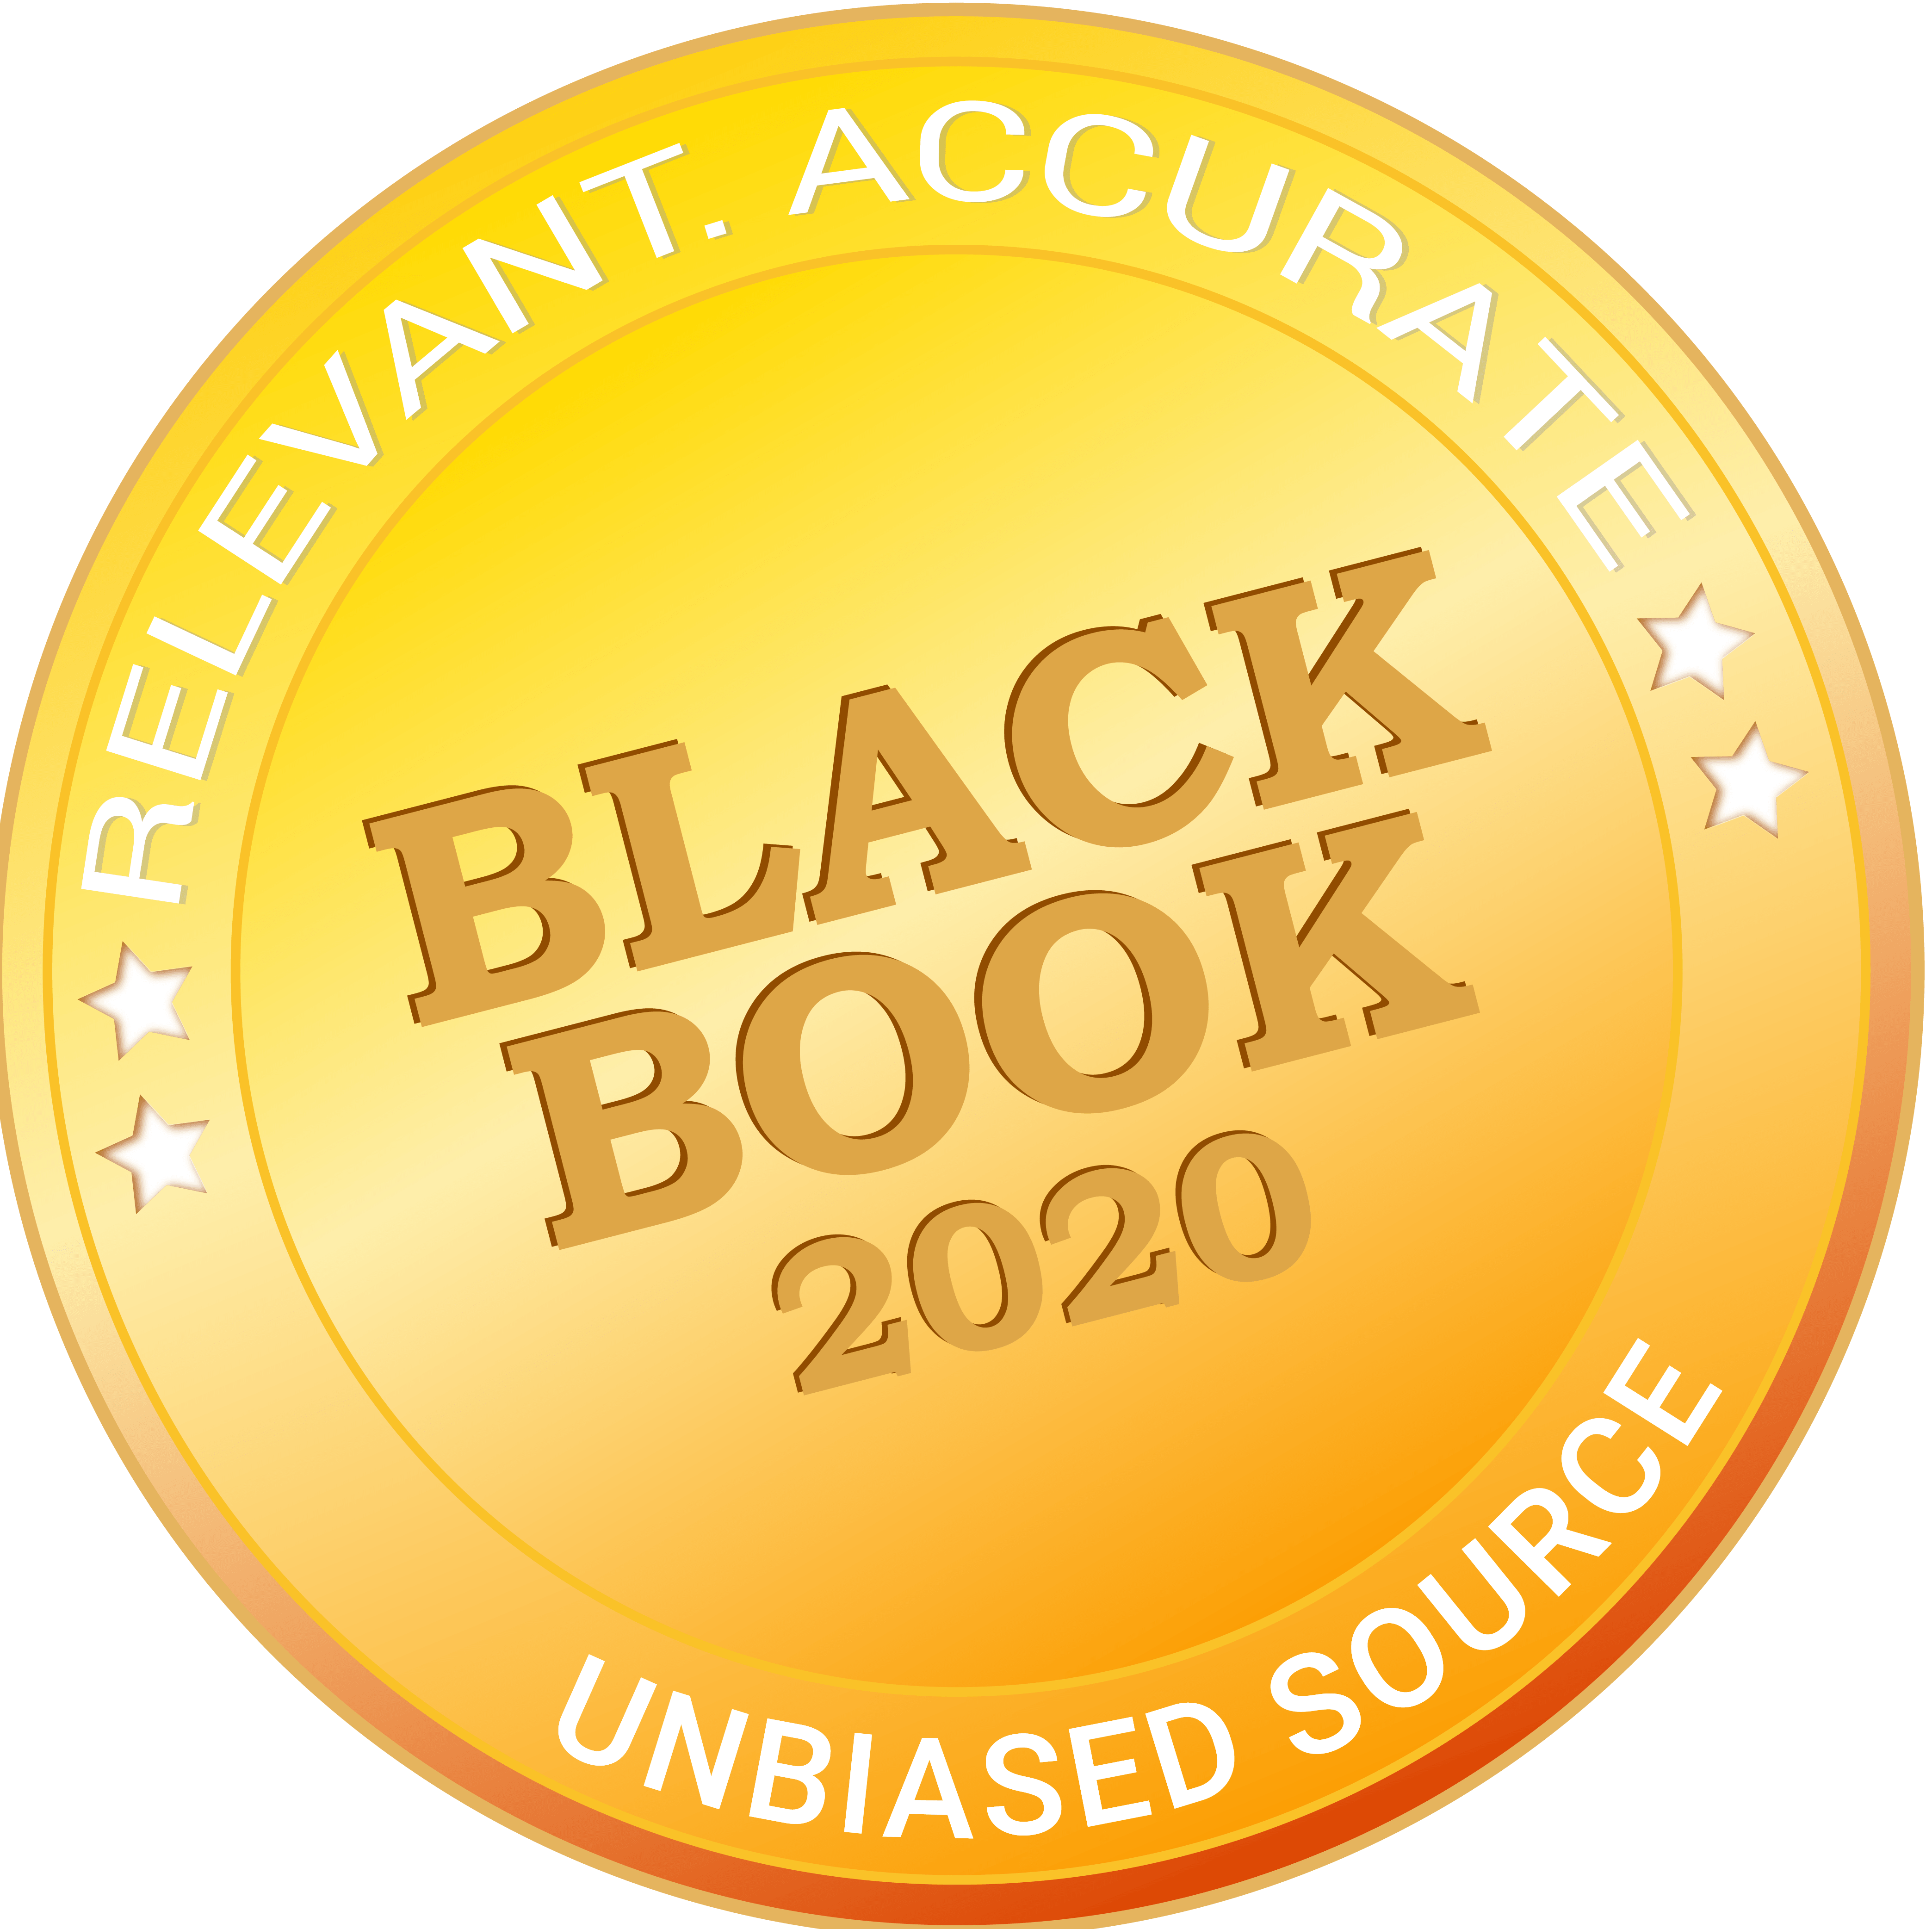 Black Book 2020 Ambulatory EHR Ambulatory Surgical Centers